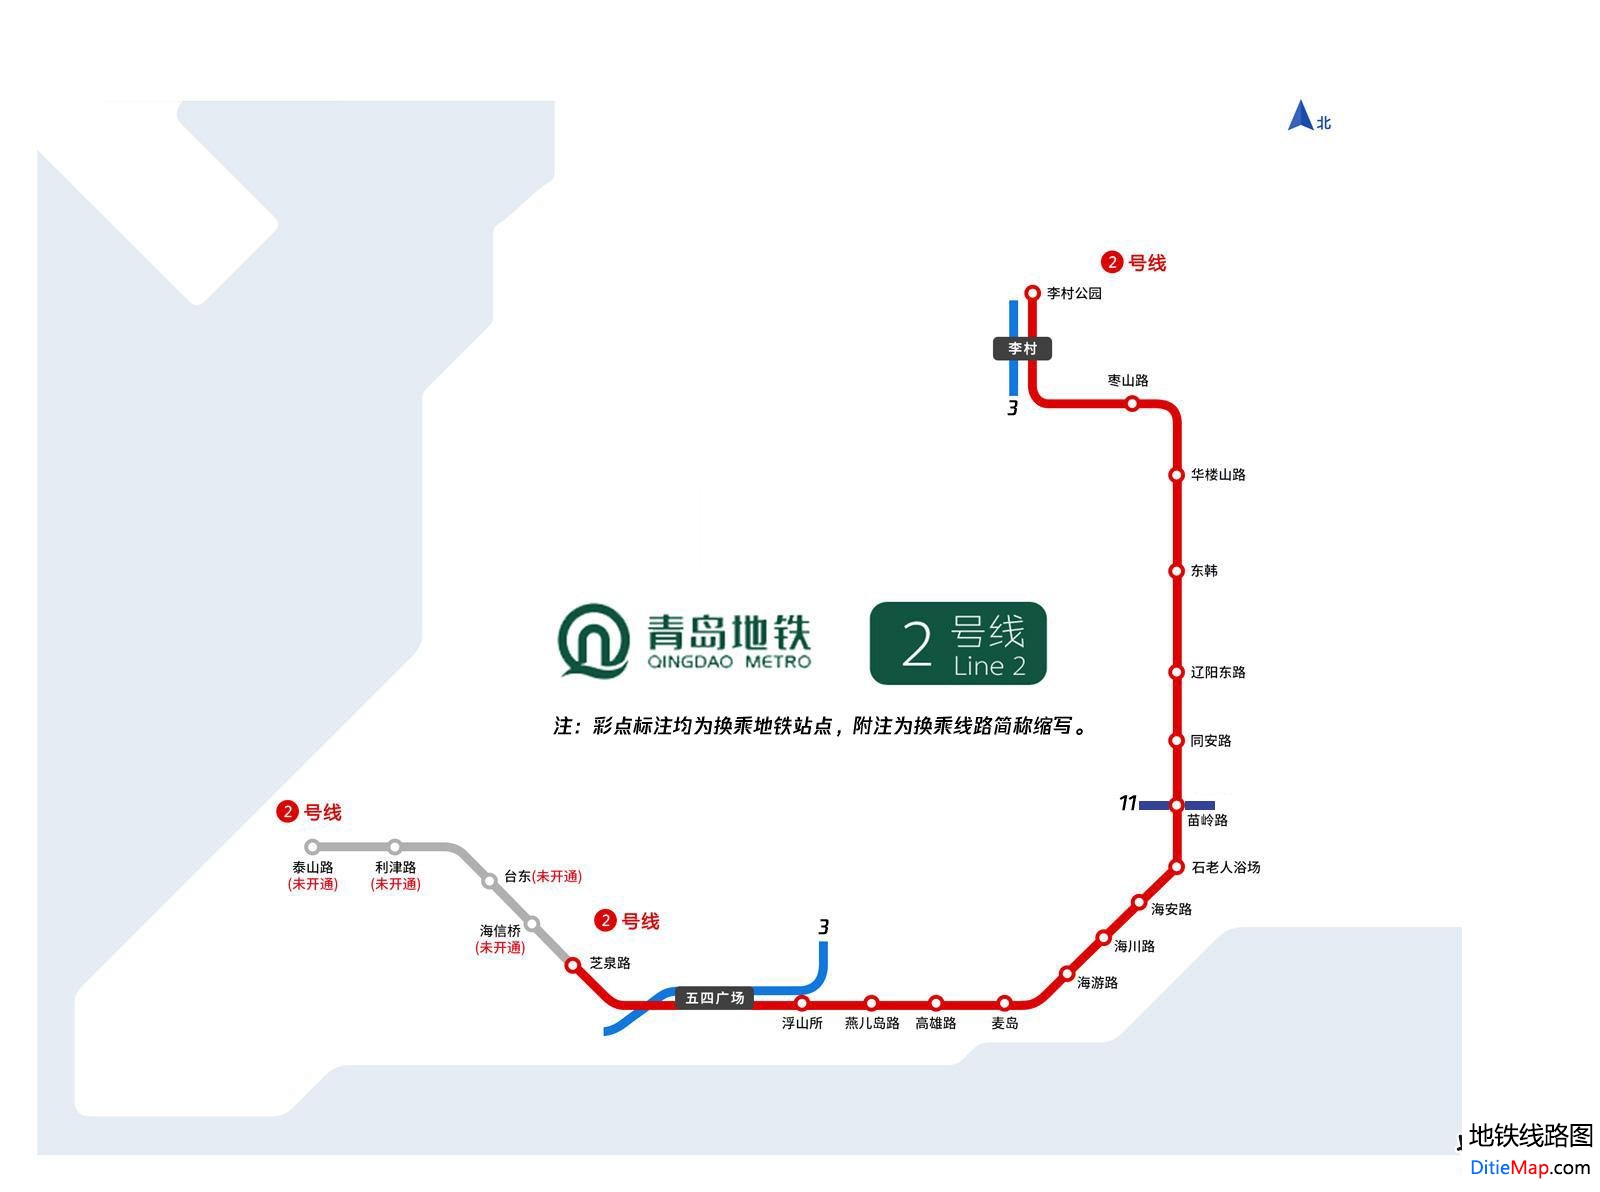 青岛地铁2号线线路图 青岛地铁2号线 青岛地铁二号线 青岛地铁线路图